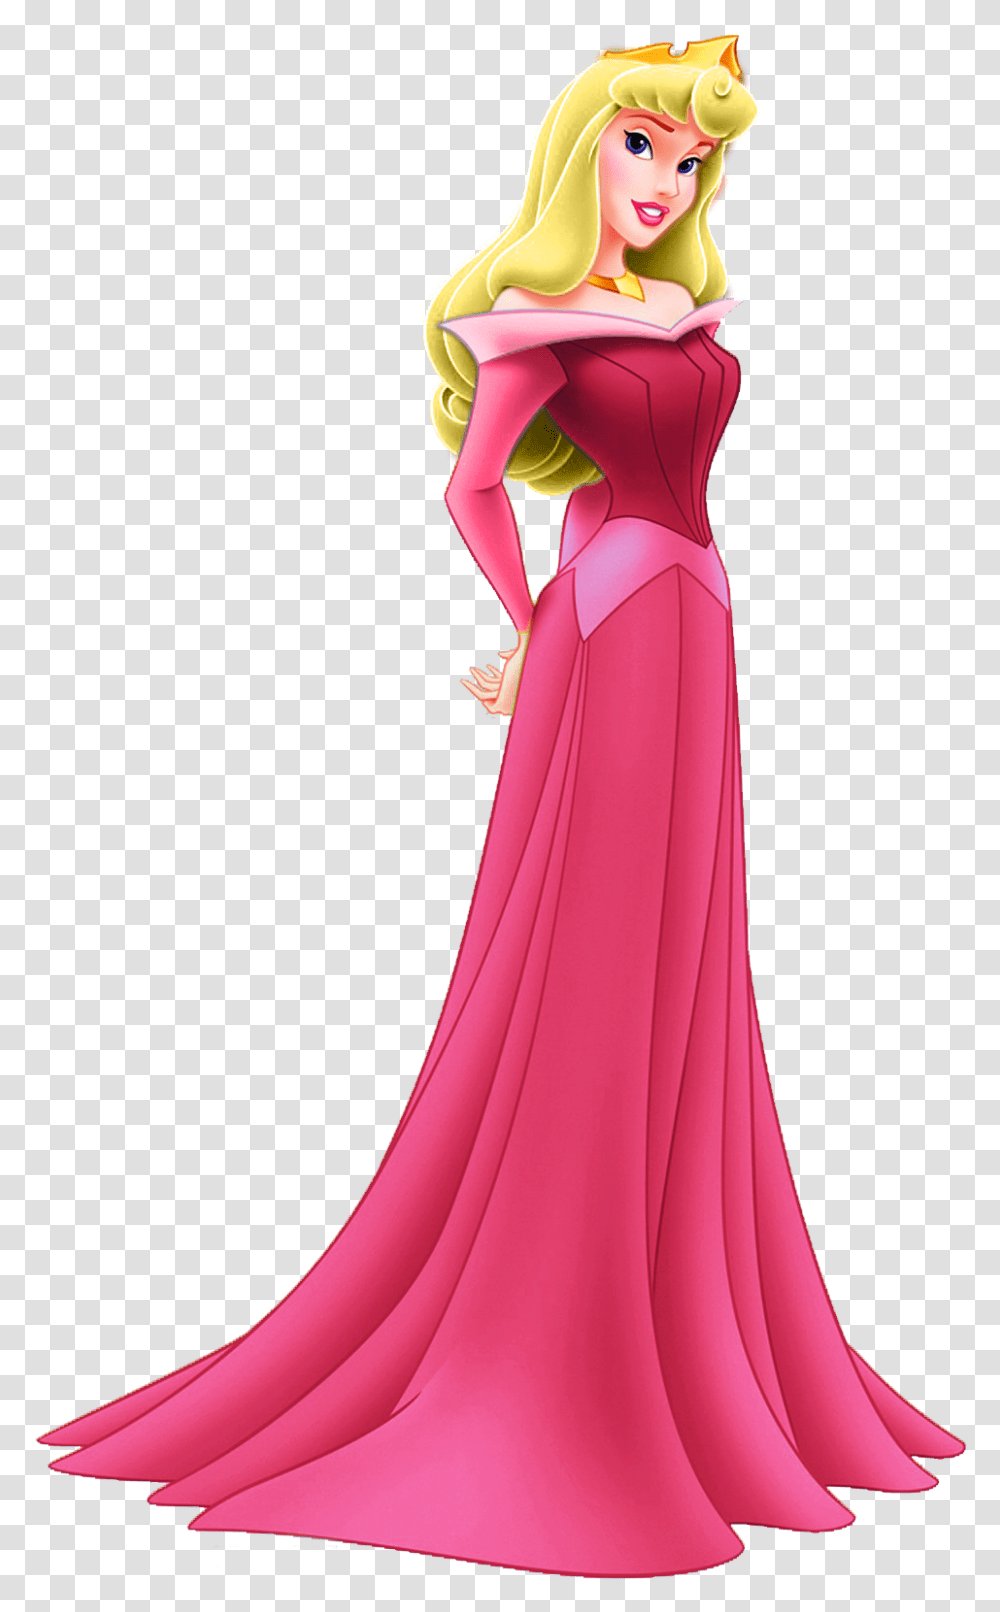 A Very Merry Un Blog Sleeping Beauty Sleeping Beauty Disney Princess, Apparel, Evening Dress, Robe Transparent Png